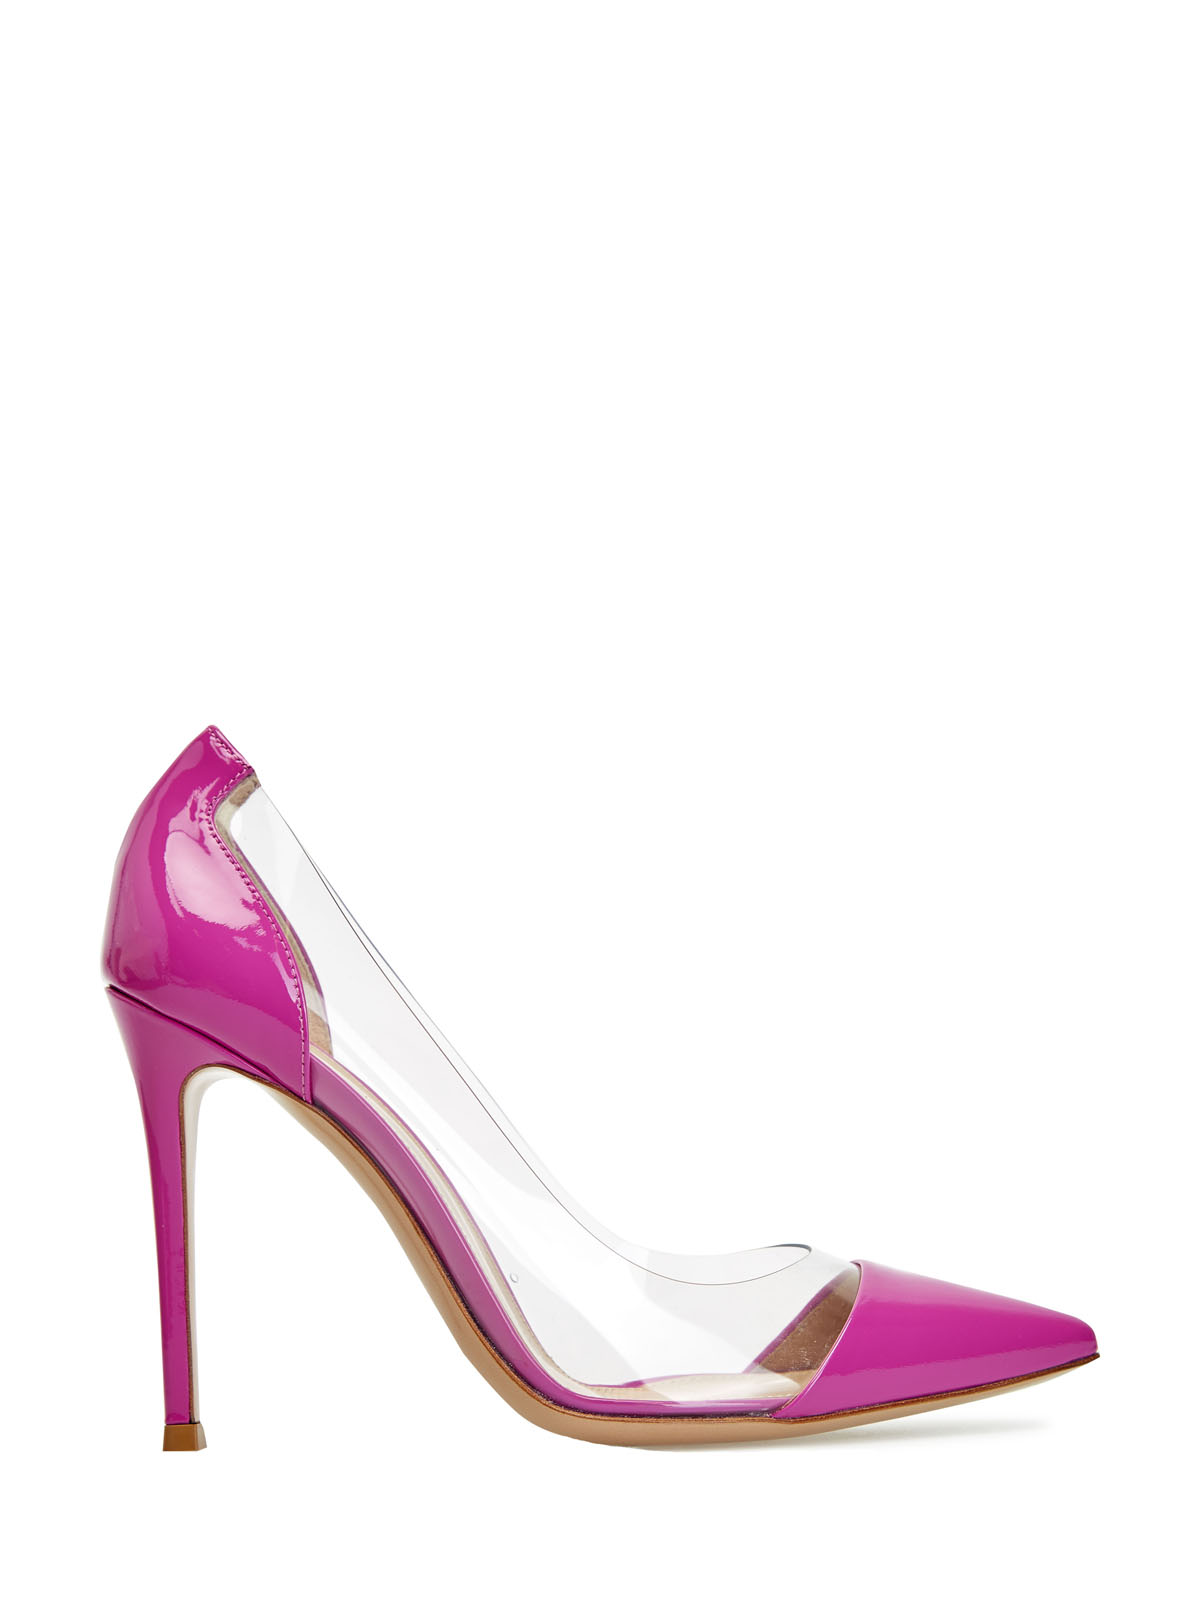 Комбинированные туфли Plexi из лакированной кожи GIANVITO ROSSI, цвет розовый, размер 36.5;37;37.5;38;38.5;39;39.5;40;41